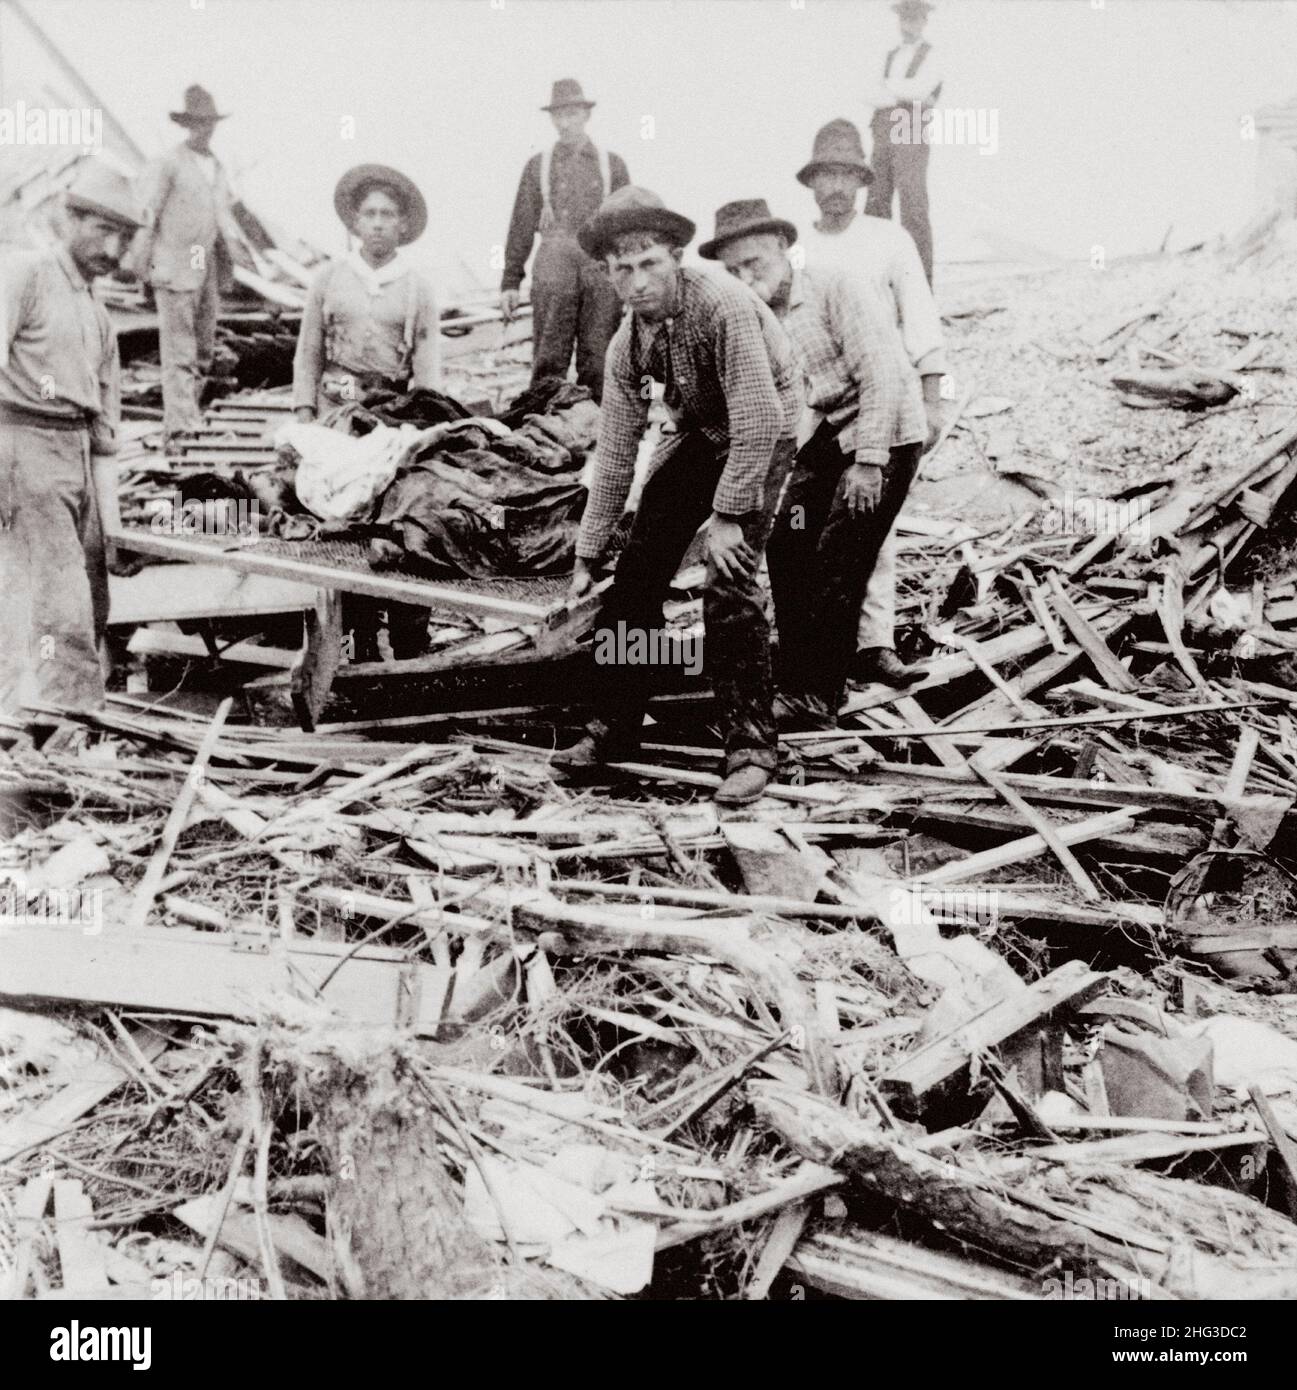 Archivfoto des Hurrikans Galveston 1900. Menschen, die Leichen auf einer Bahre zwischen den Gebäuden tragen, die durch den Hurrikan und die Flut zerstört wurden. Galveston, T Stockfoto